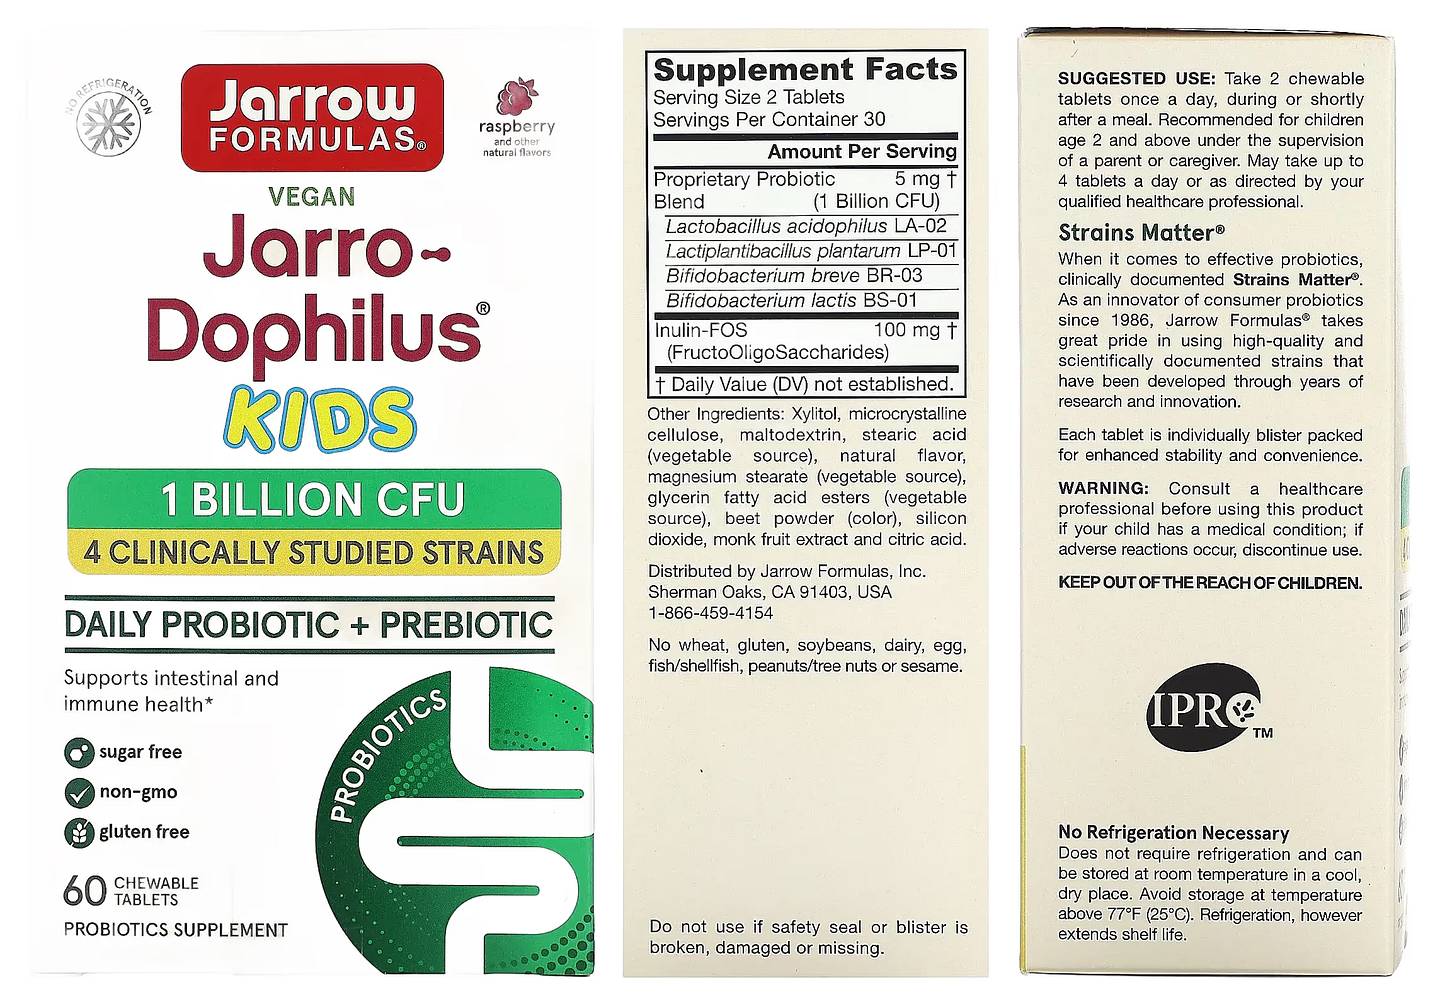 Jarrow Formulas, Jarro-Dophilus Kids packaging